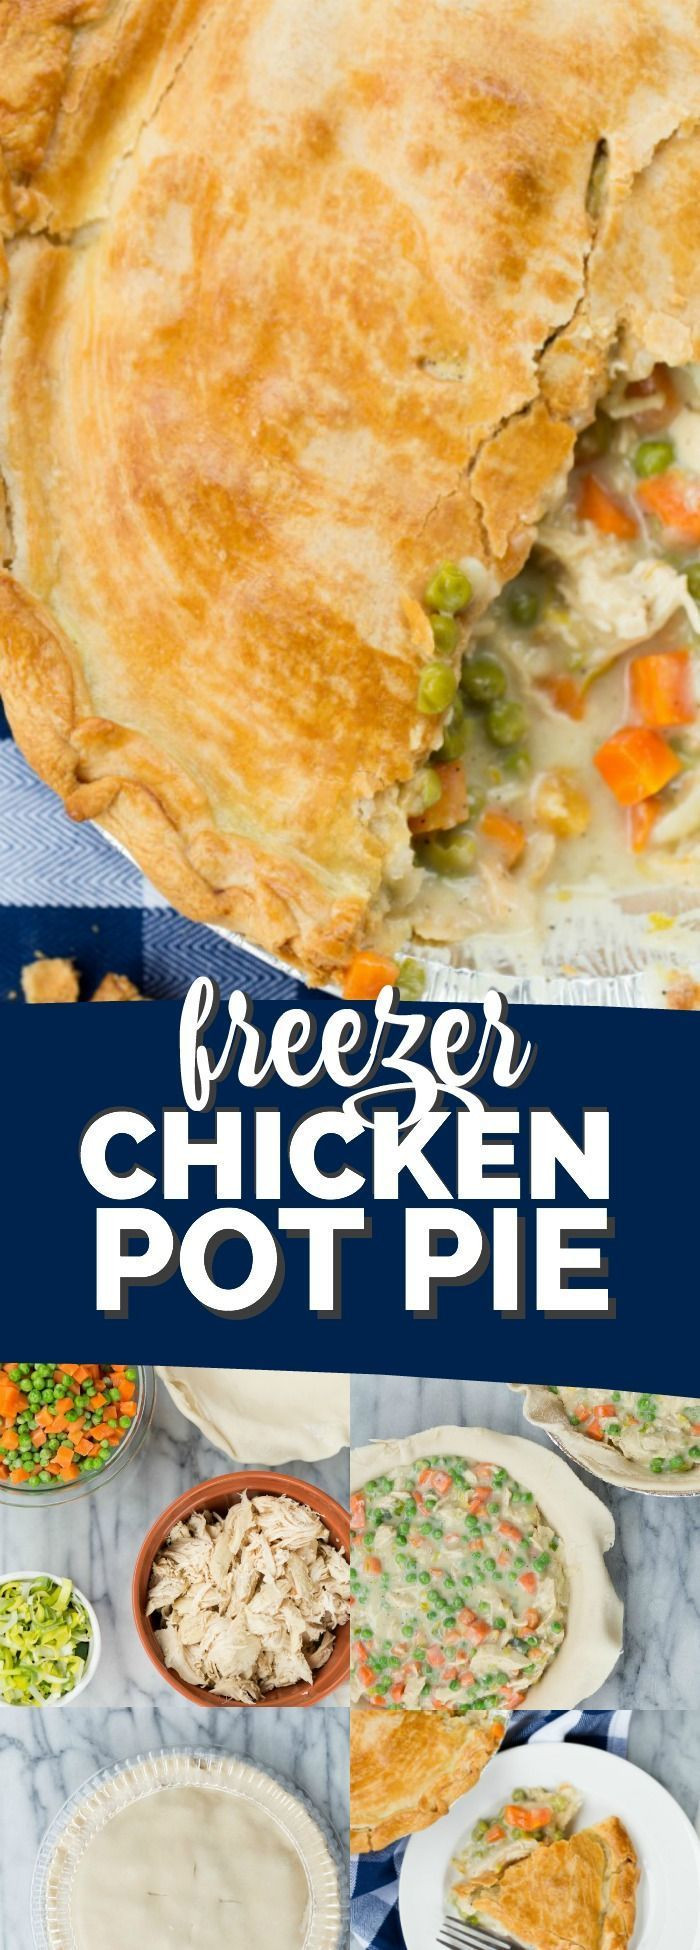 Freezer Chicken Pot Pie Recipe
 Freezer Ready Chicken Pot Pie Recipe in 2019